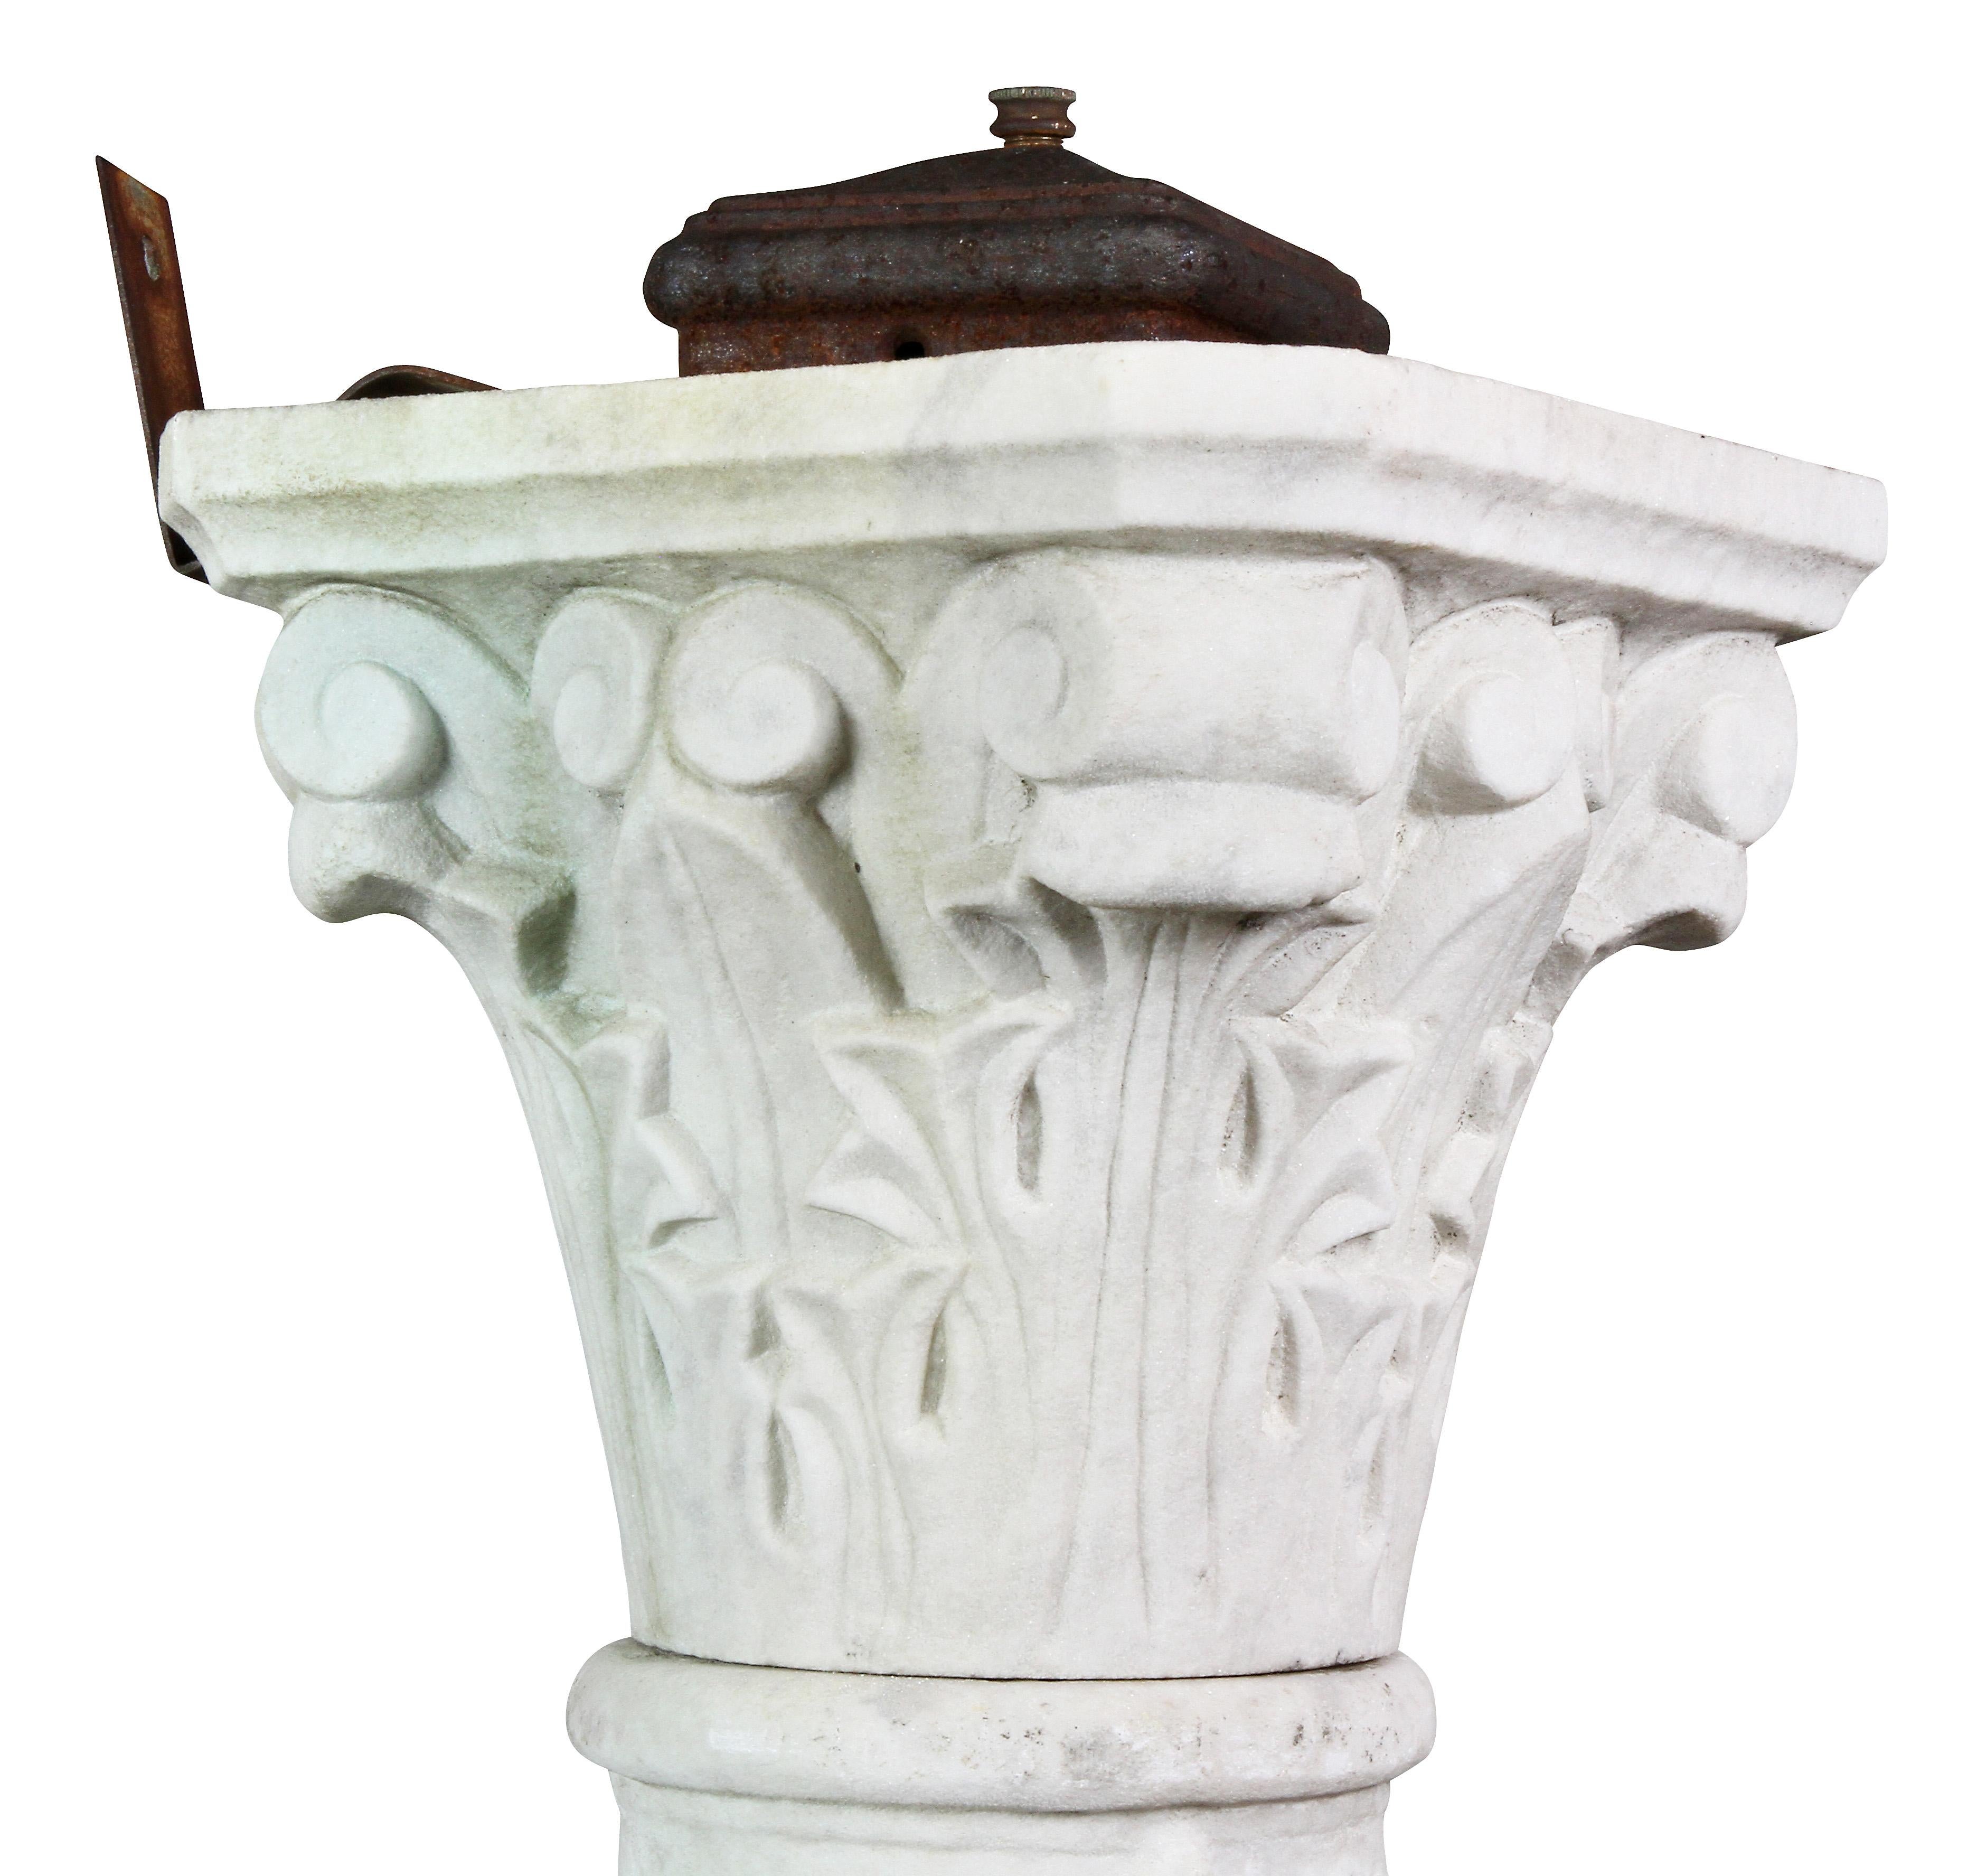 Utilisé à l'origine dans un jardin, il était électrifié. Capitole corinthien stylisé avec les restes d'un ancien boîtier d'interrupteur en métal, colonne sculptée de raisins et de vignes, base carrée à gradins.